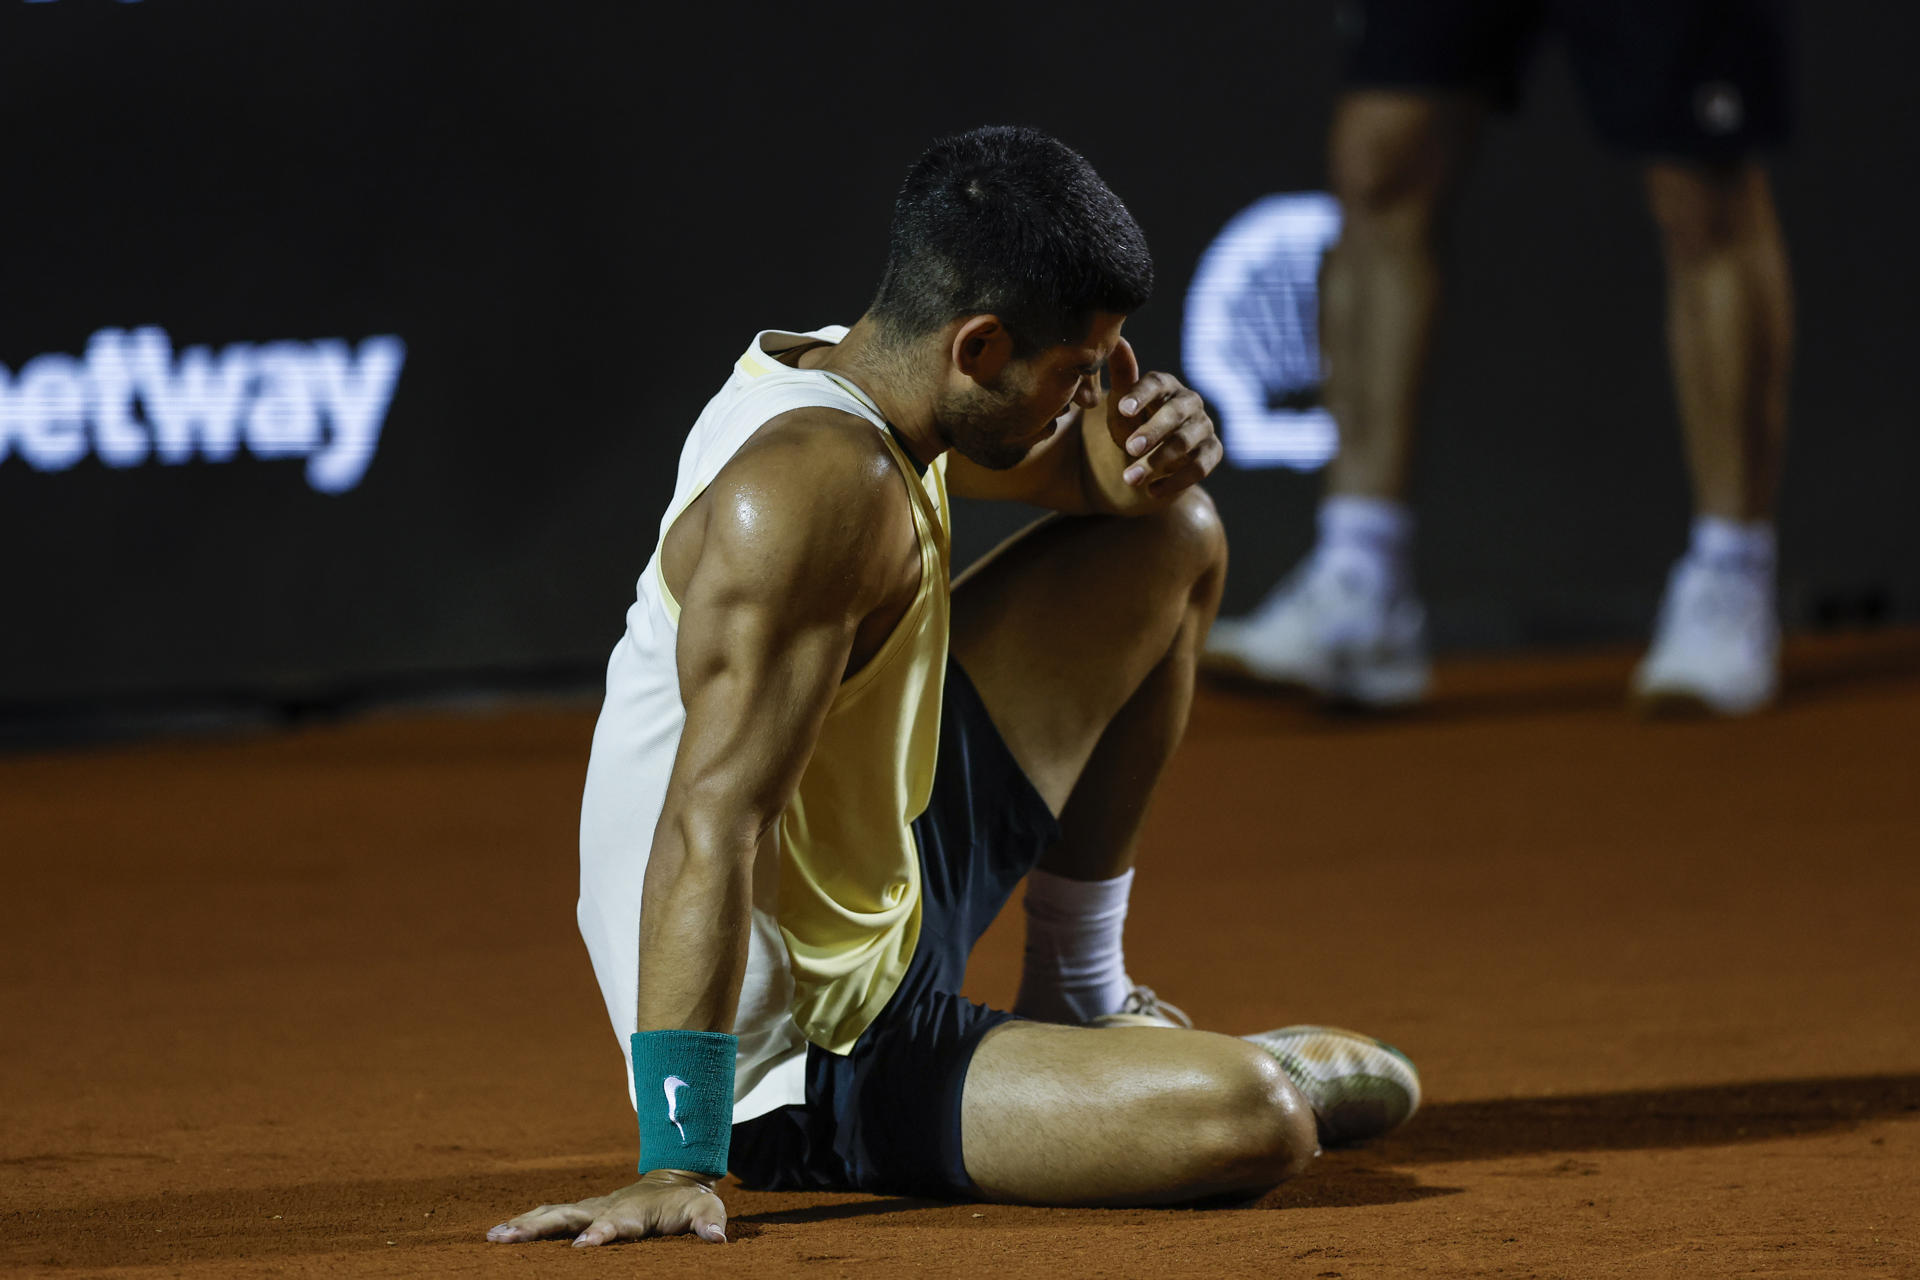 El tenista español Carlos Alcaraz fue registrado este martes, 20 de febrero, al lamentarse tras sufrir una lesión en su tobillo derecho, durante el primer set de su debut en el torneo contra el local Thiago Monteiro, en el Jockey Club Brasileño, en Río de Janeiro (Brasil). EFE/Antonio Lacerda